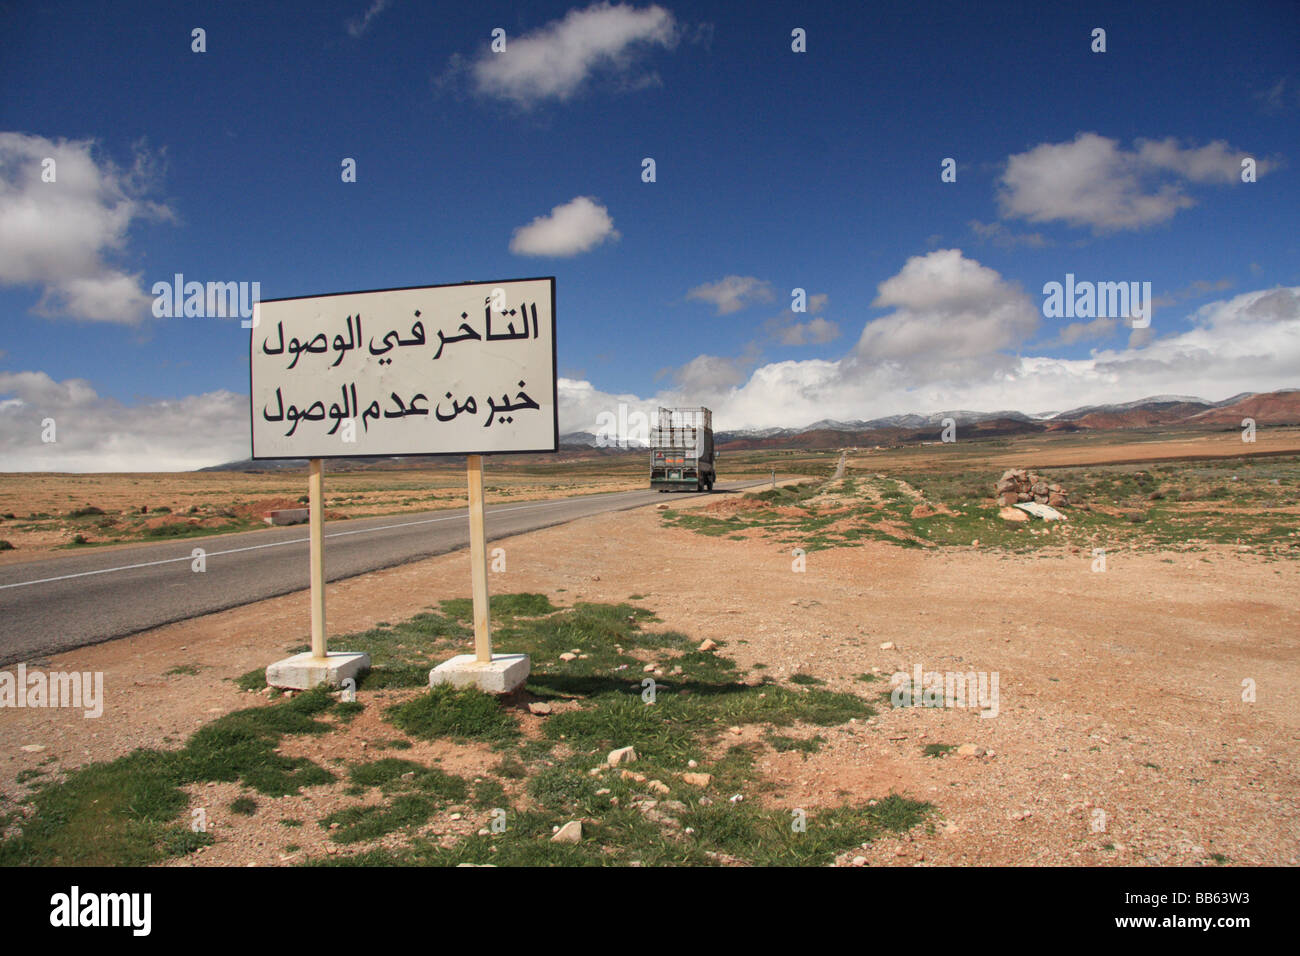 Panneau routier en arabe sur une route à travers le Moyen Atlas se lit comme suit : "mieux vaut arriver en retard que pas du tout' Ifrane, Maroc Banque D'Images